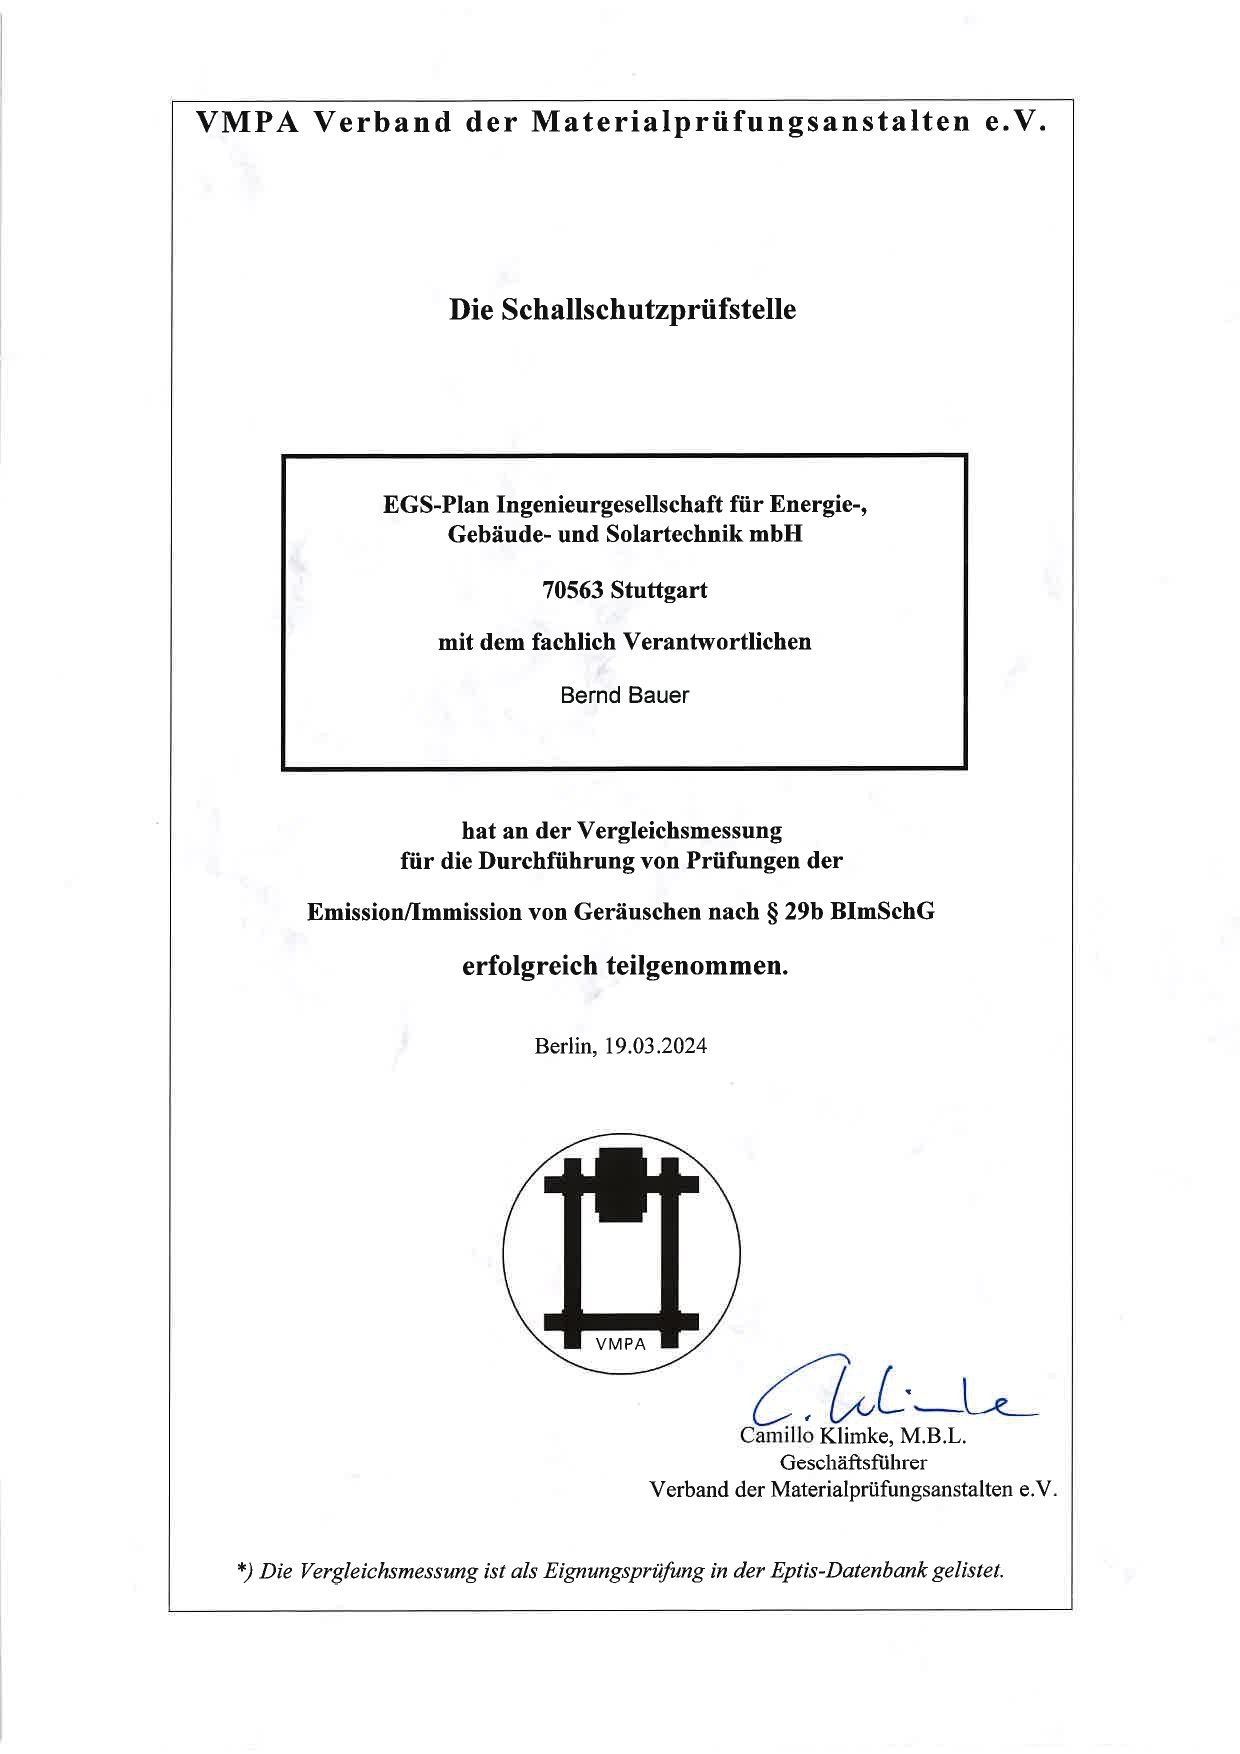 VMPA-Zertifikat Bernd Bauer